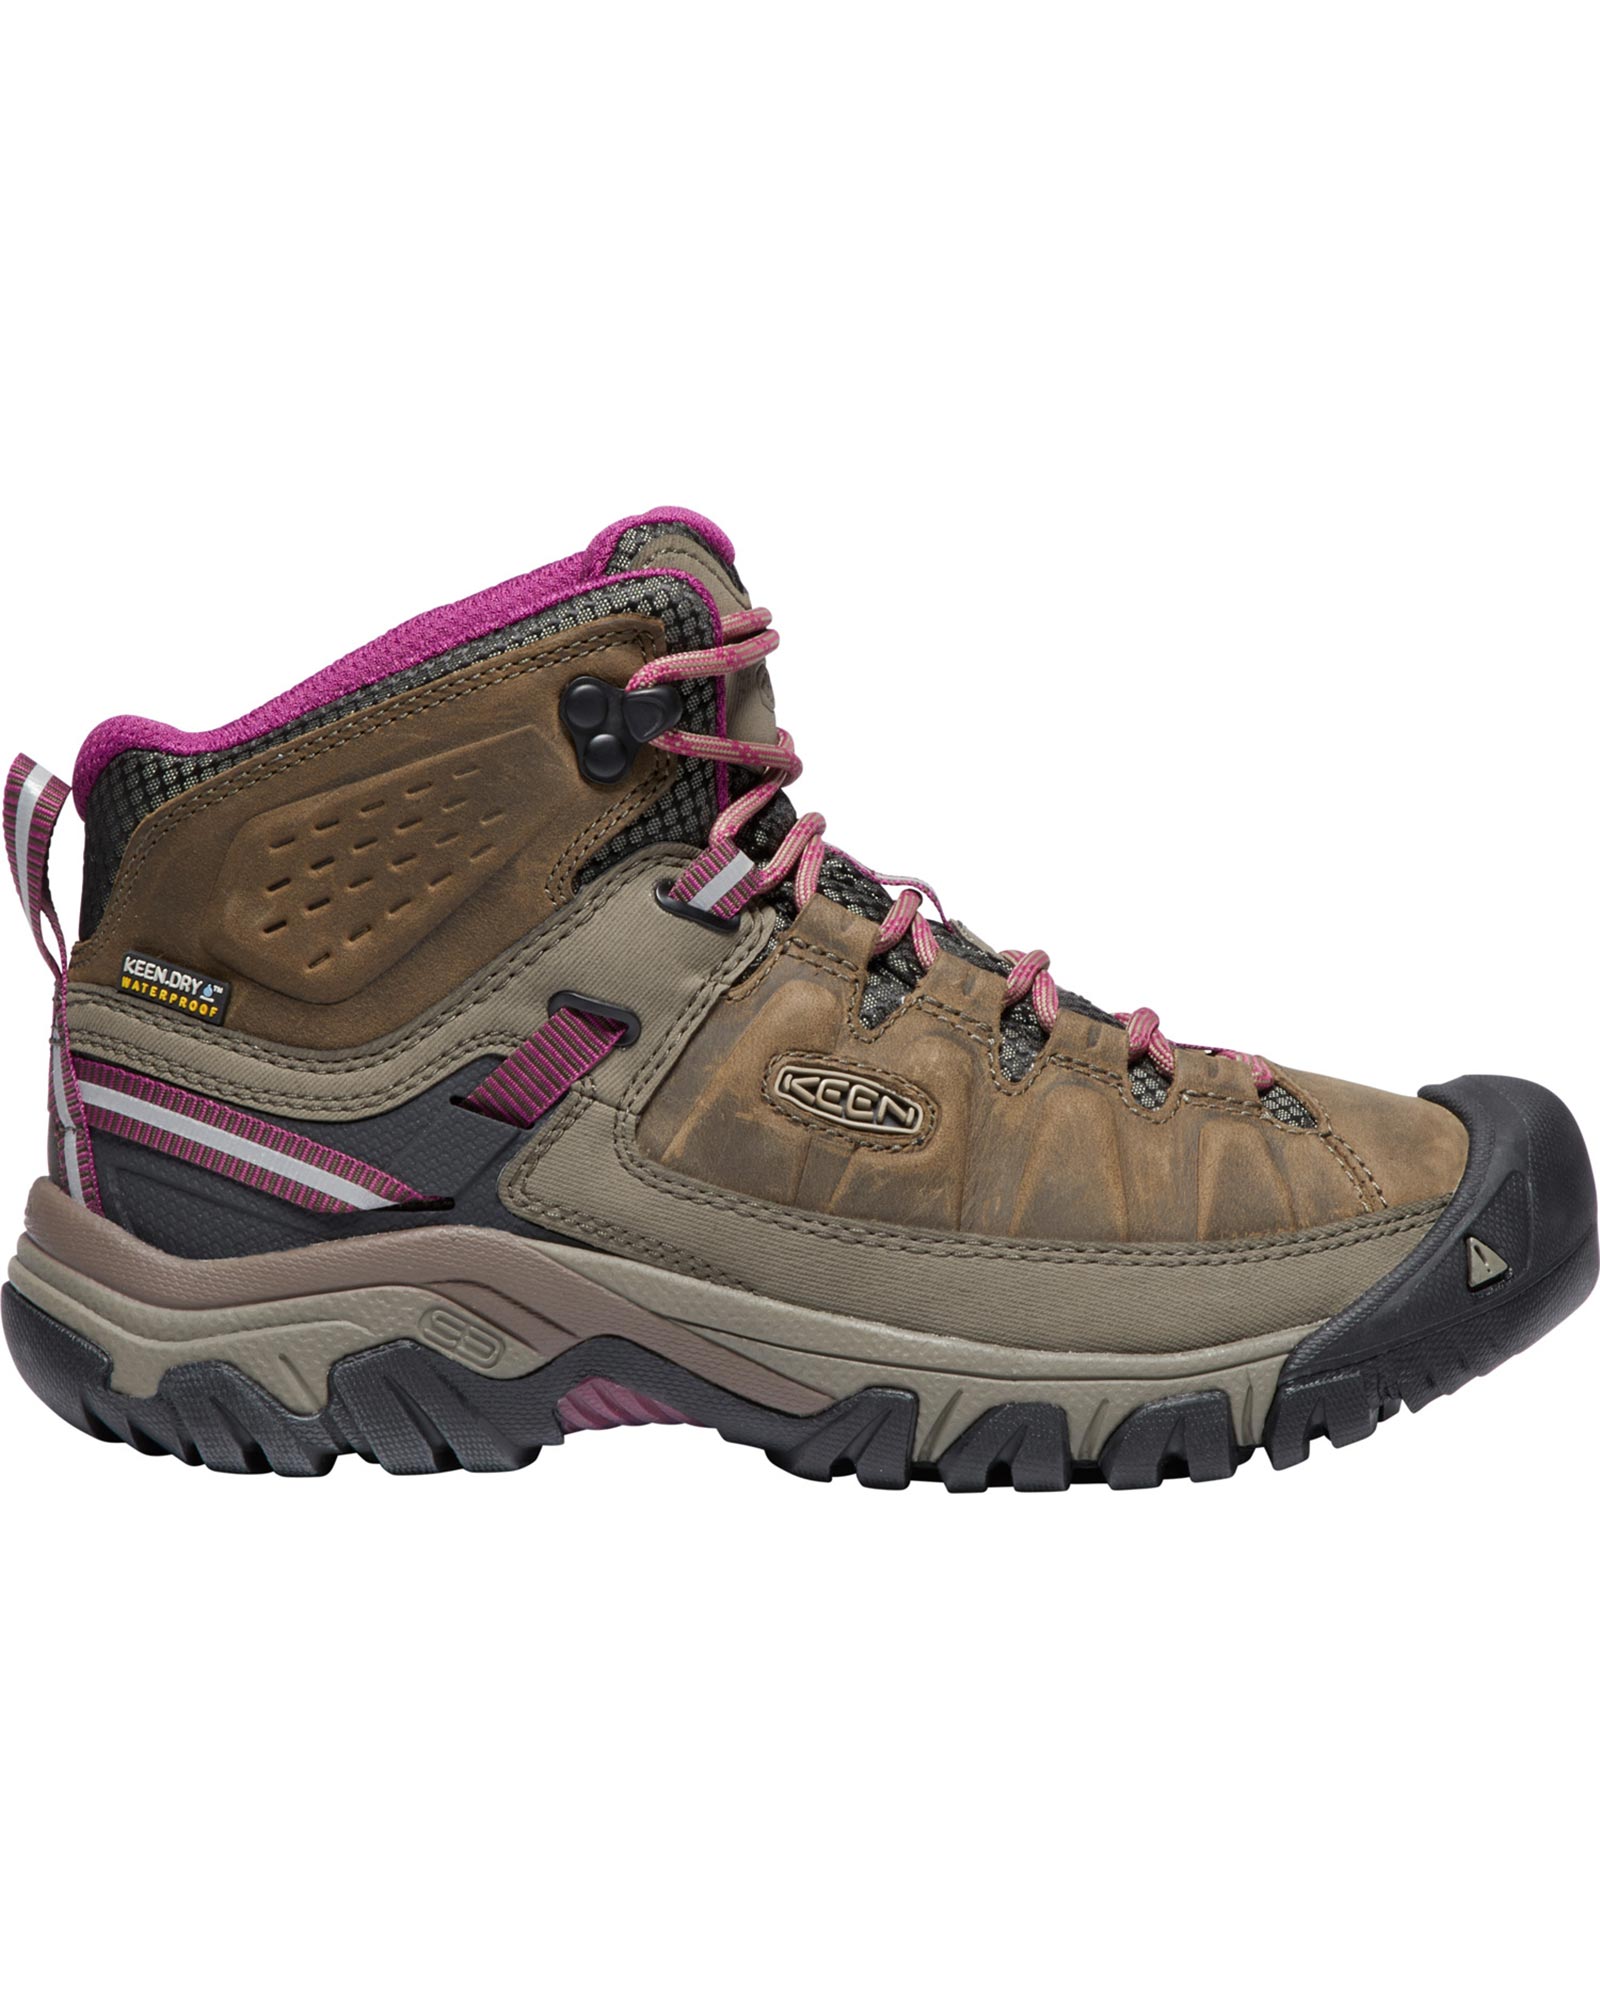 Keen Targhee III Women’s Mid Waterproof Boots - Weiss/Boysenberry UK 6.5